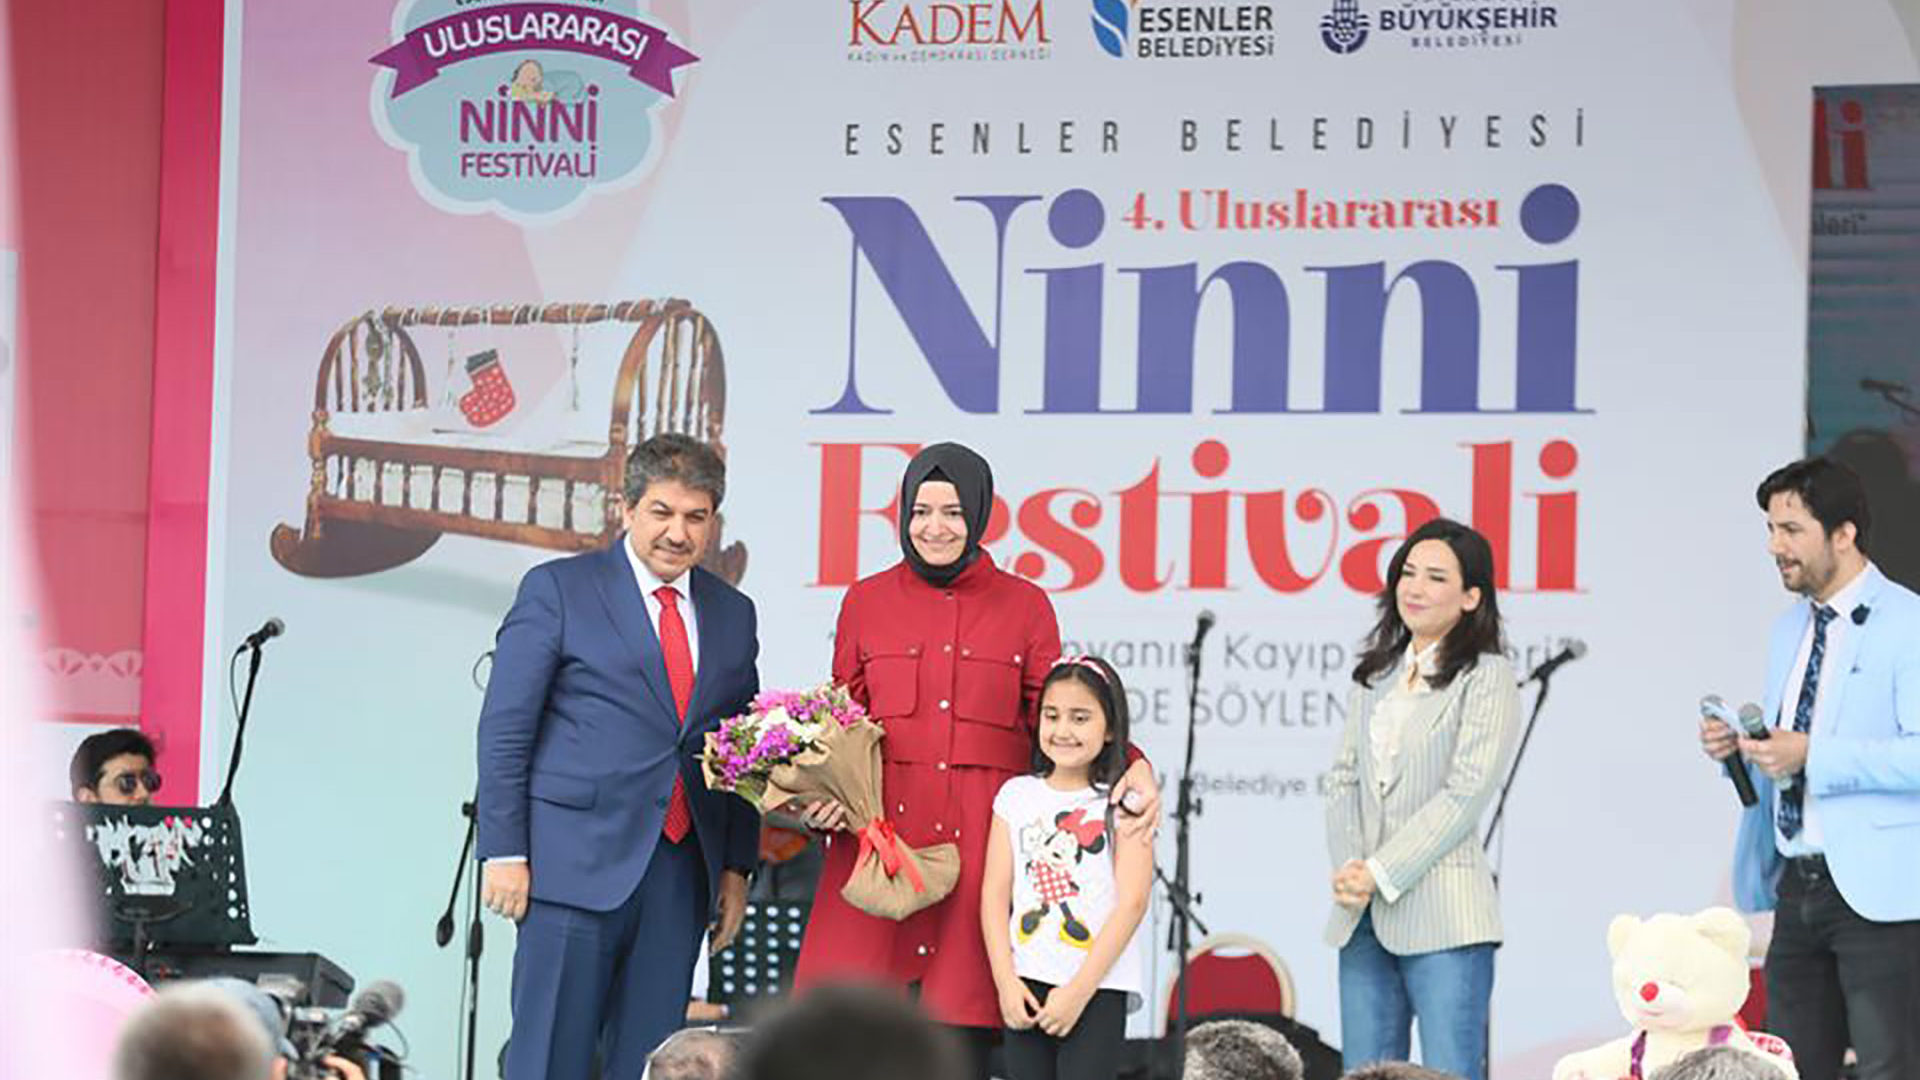 Uluslararası Ninni Festivali